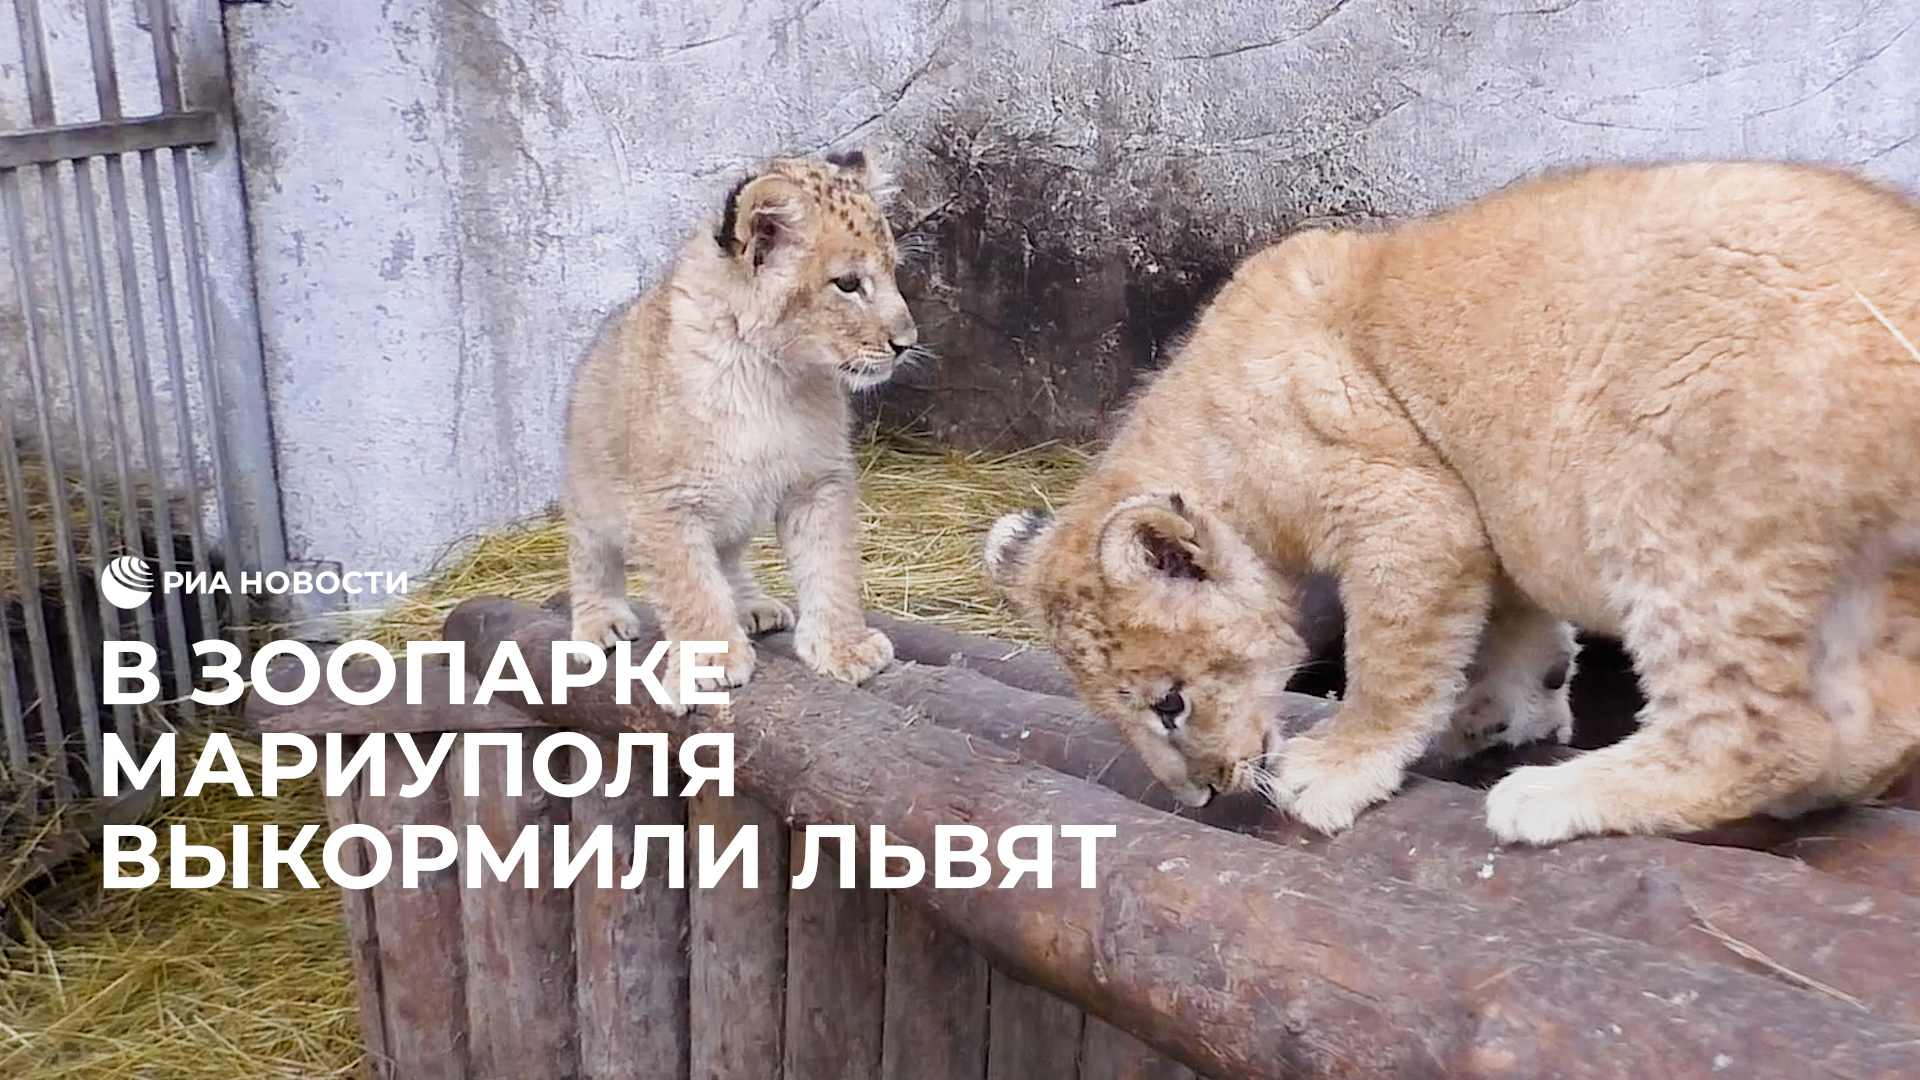 В Мариупольском зоопарке сотрудники воспитывают львят